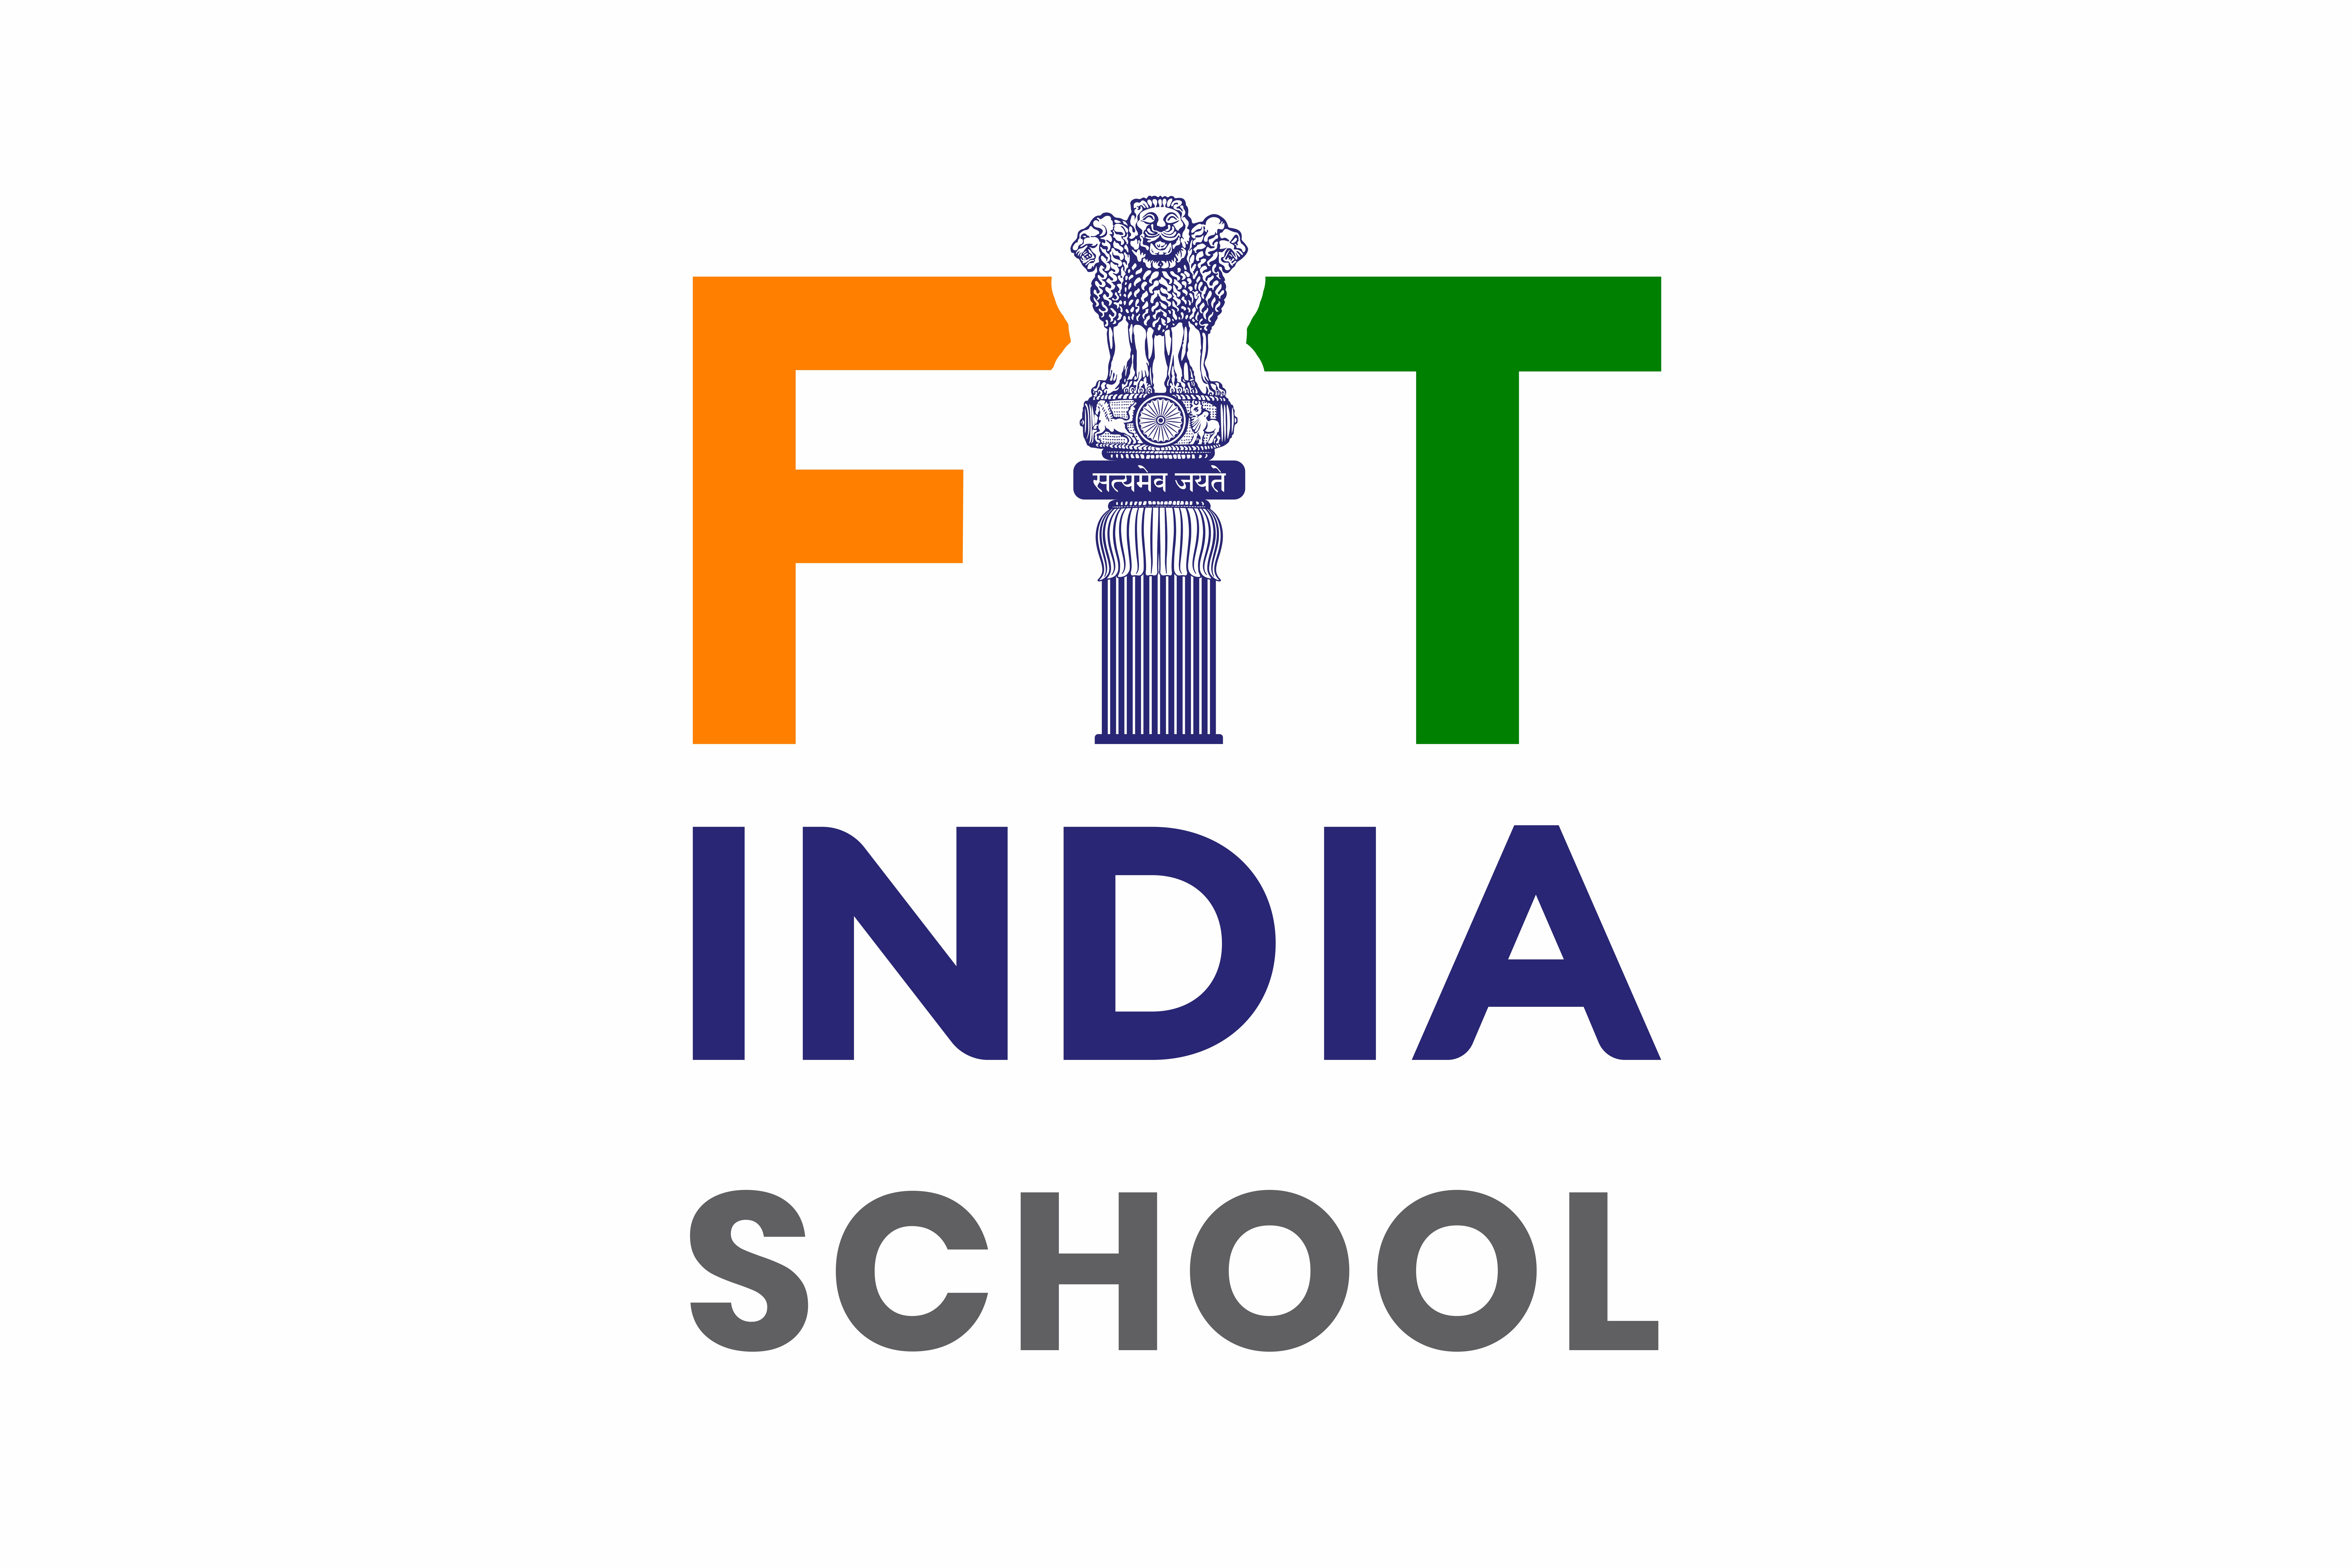 Fit India School